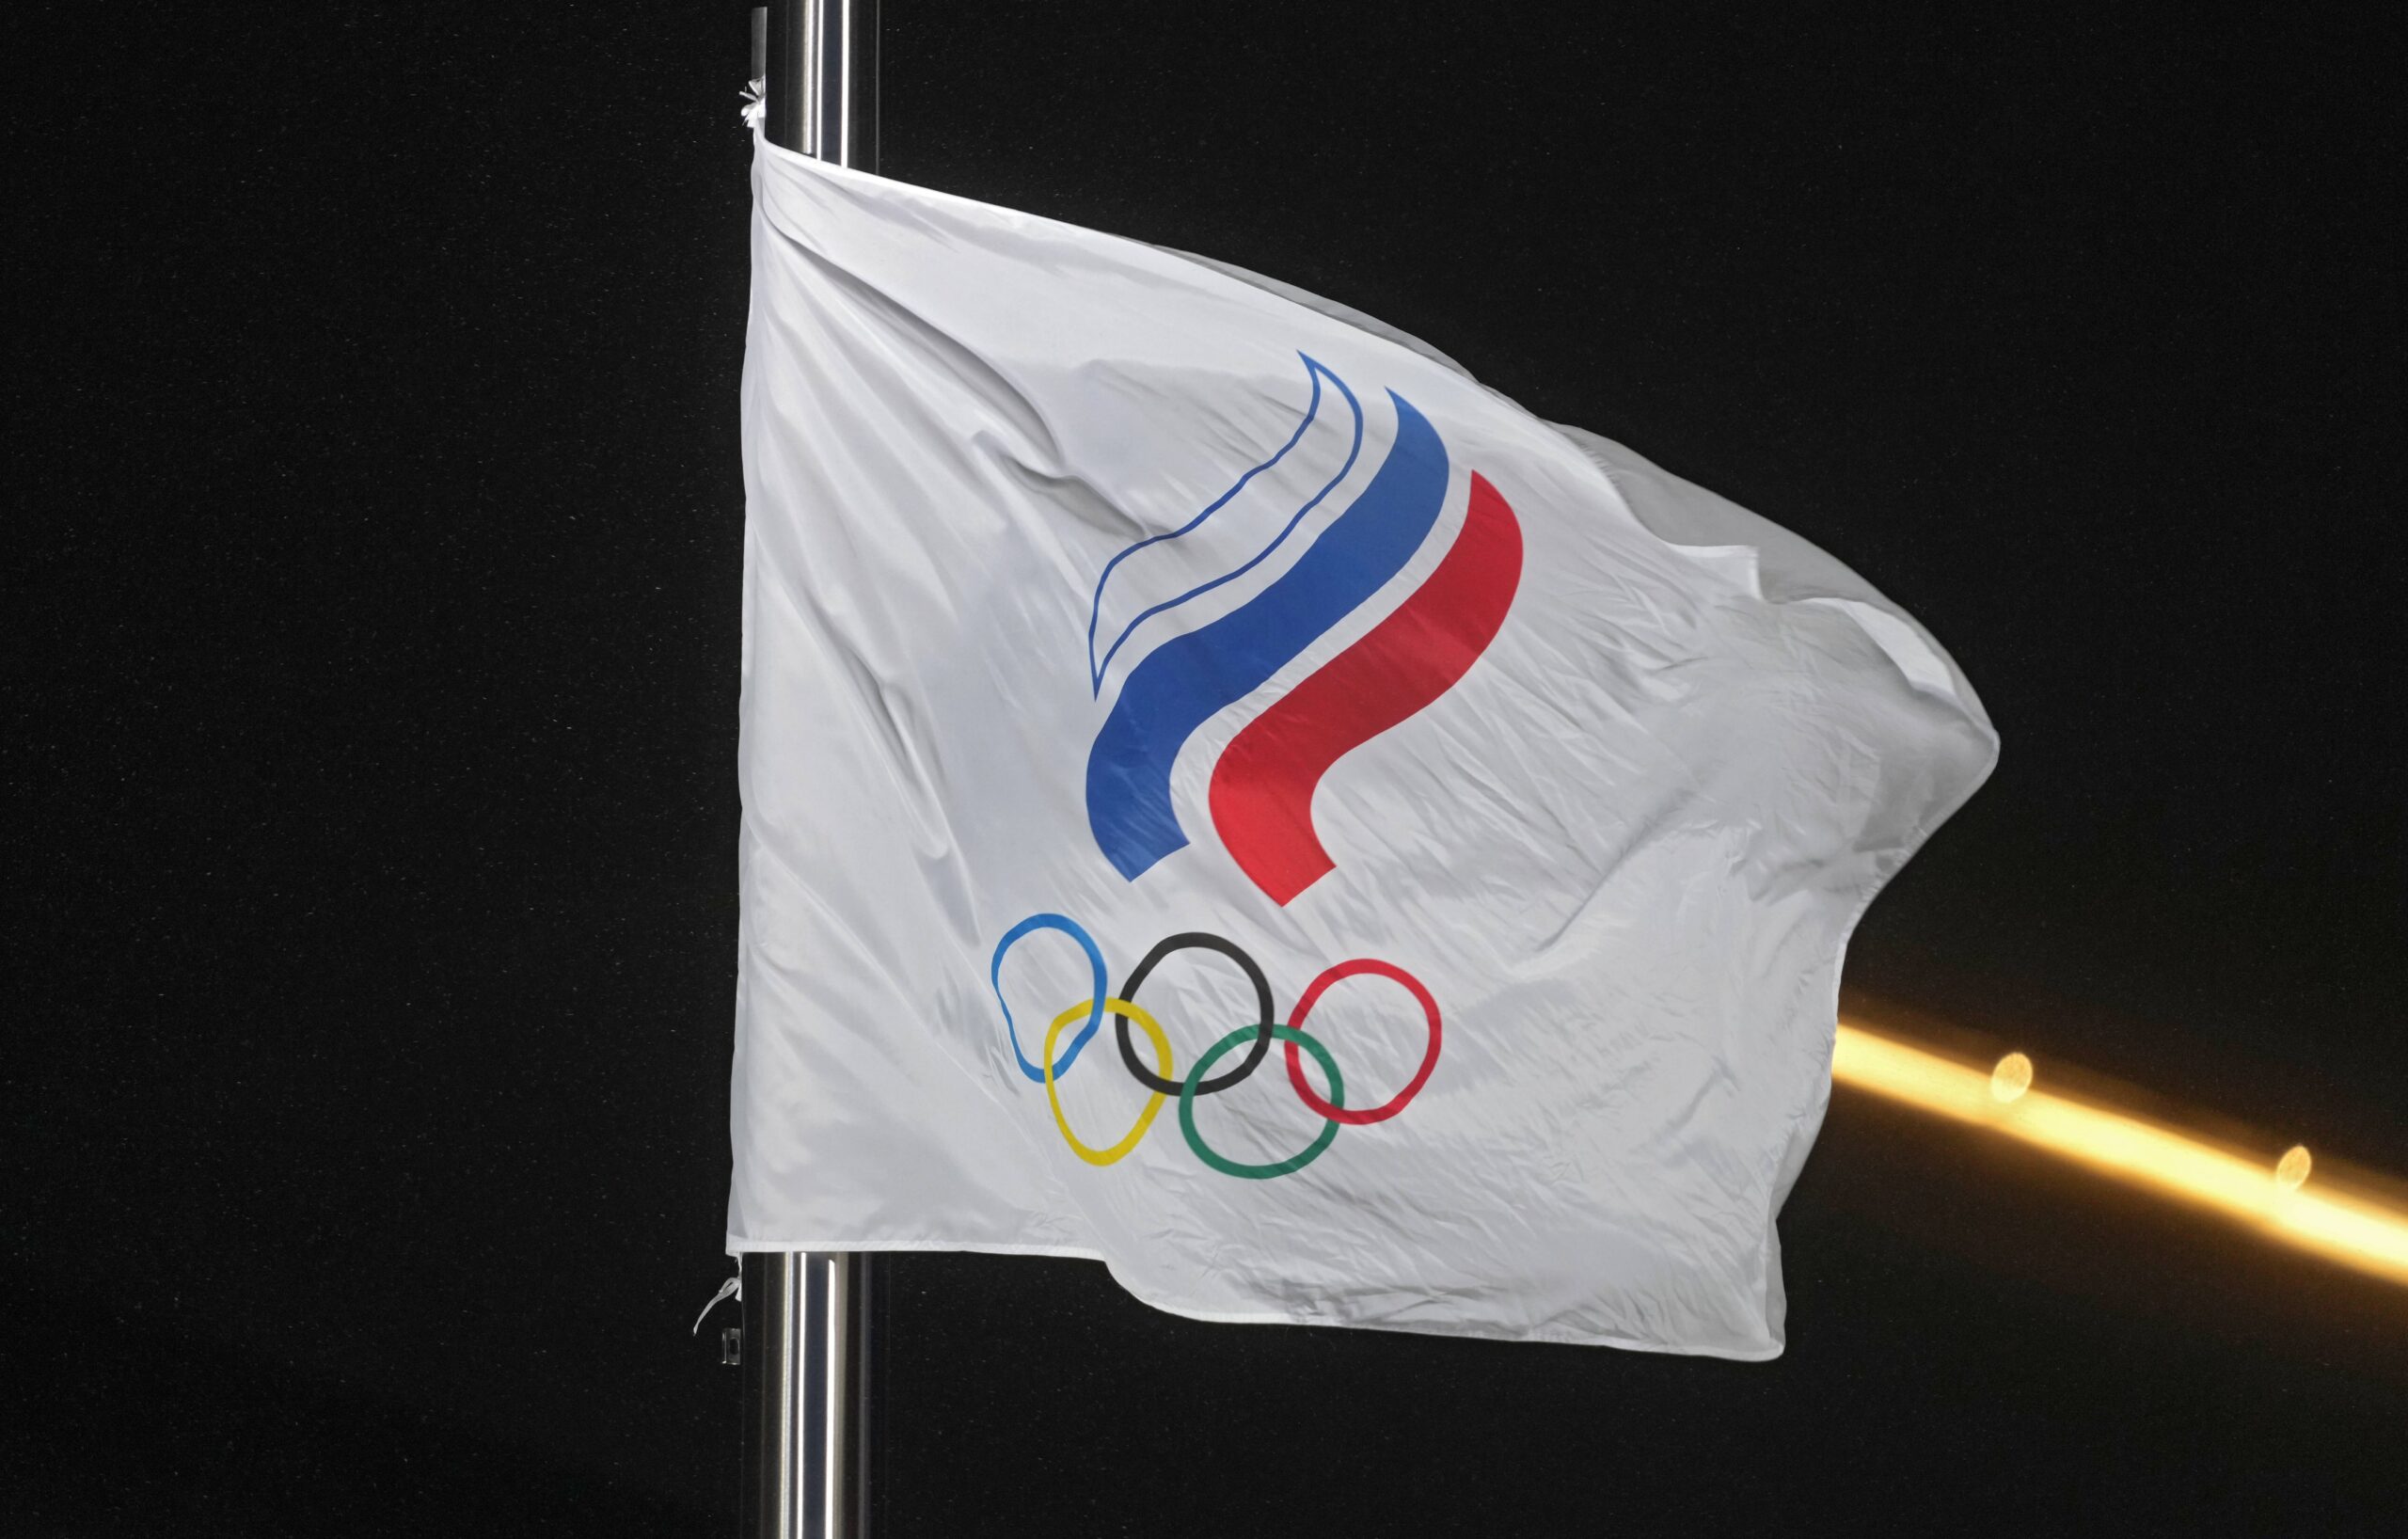 Russland-Flagge bei den Olympischen Spielen